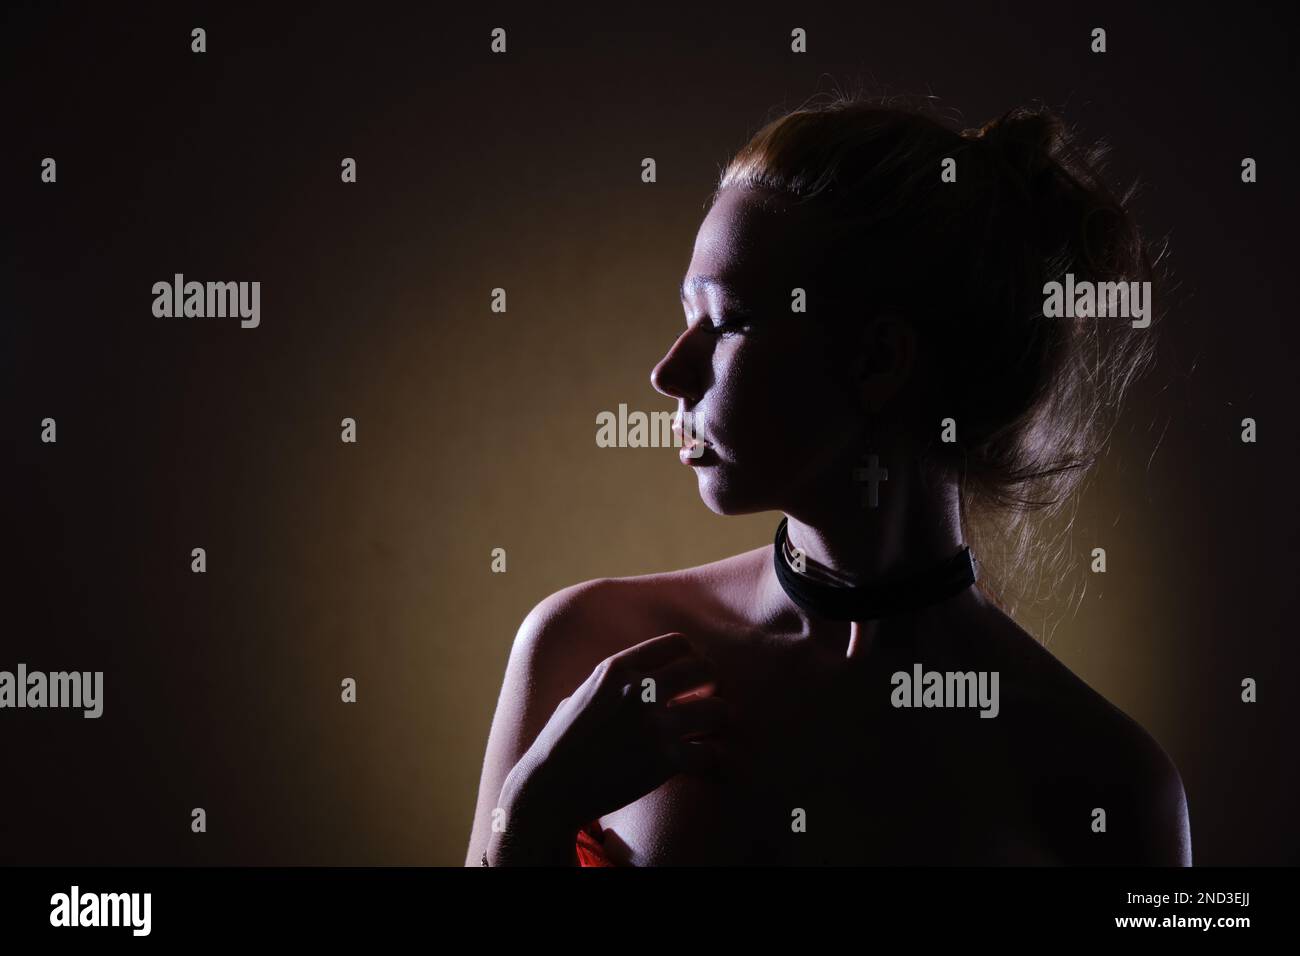 Schönheitsporträt einer traurigen Frau in schwarzem Kleid mit nackten Schultern, blondes Haar, das zur Seite blickt Profil-Ansicht monochrom Stockfoto